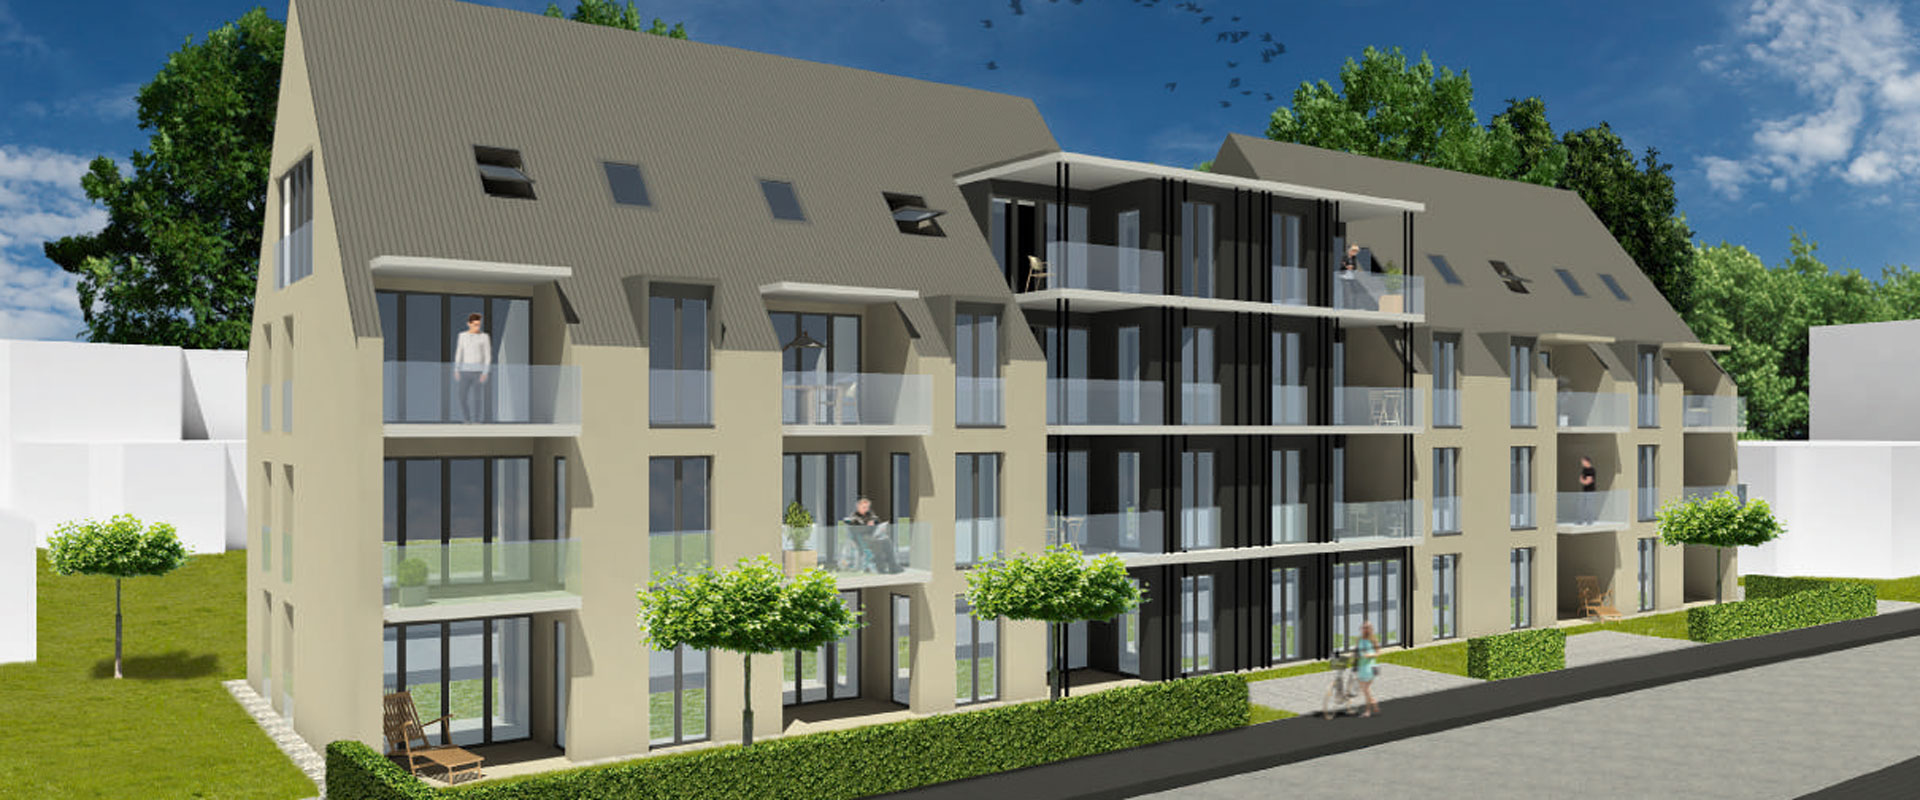 MFH mit 24-Einheiten in Friedrichshafen   „Betreutes Seniorenwohnen“ | Alle Wohnungen sind verkauft!!